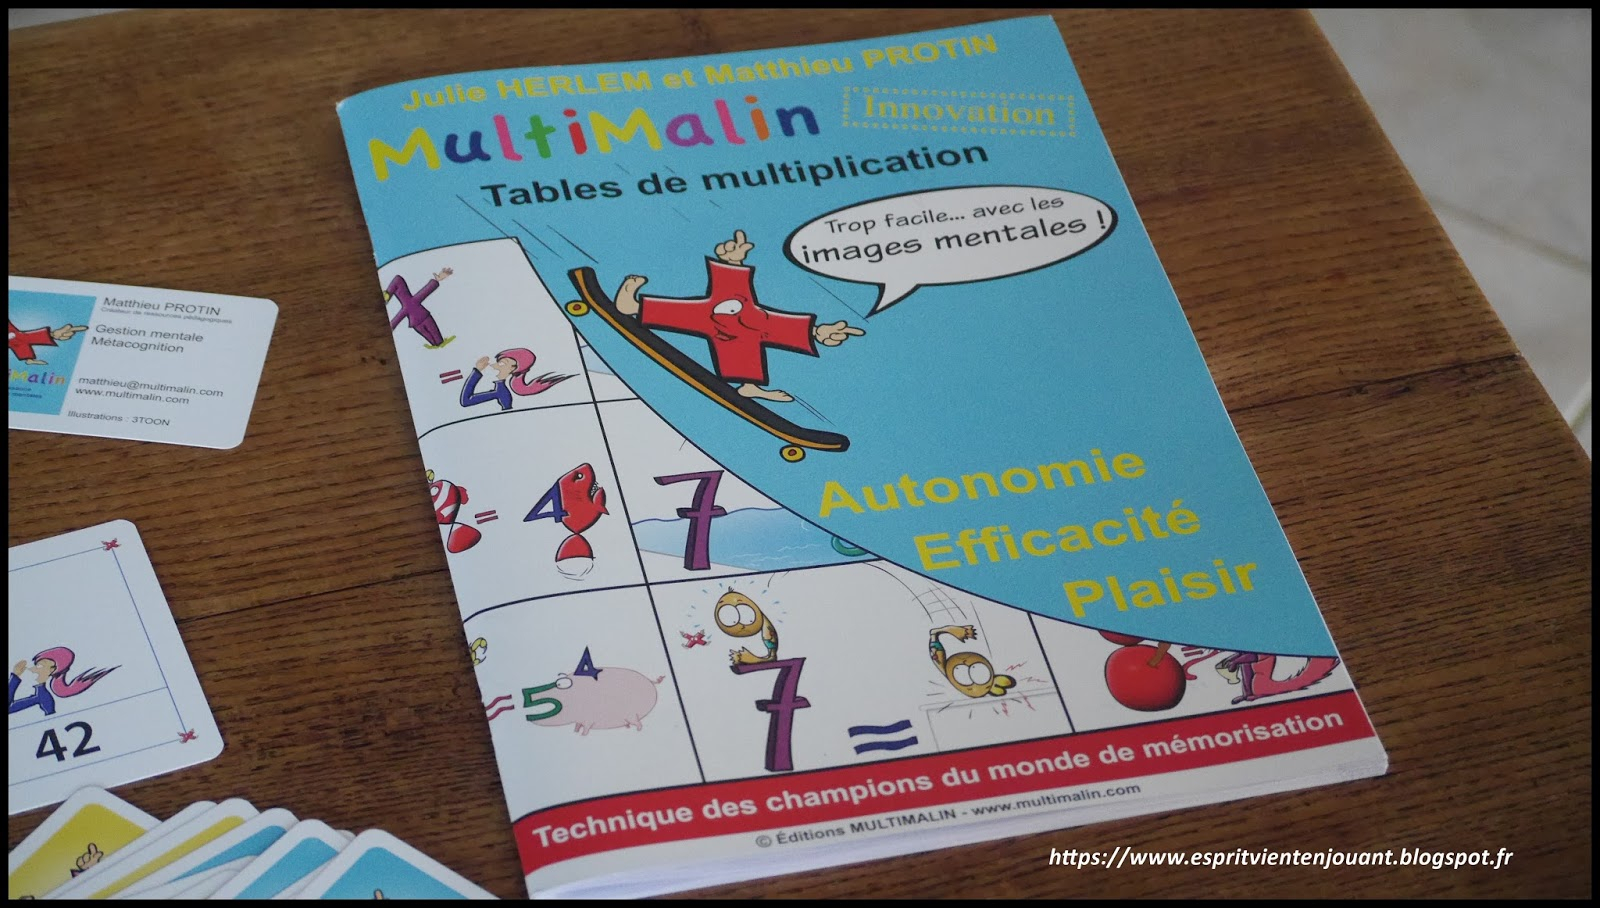 L'Esprit Vient En Jouant: [Activité Enfants] Apprendre Les avec Apprendre La Table De Multiplication En Jouant